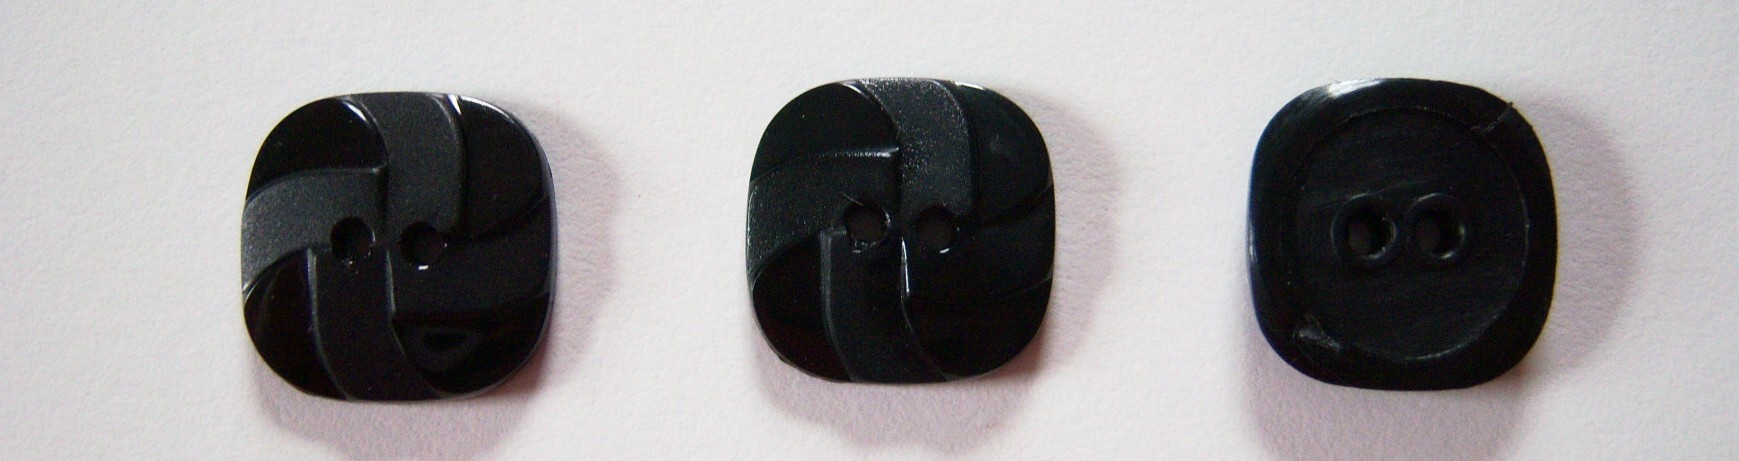 JHB Shiny Black 3/4" Square Button